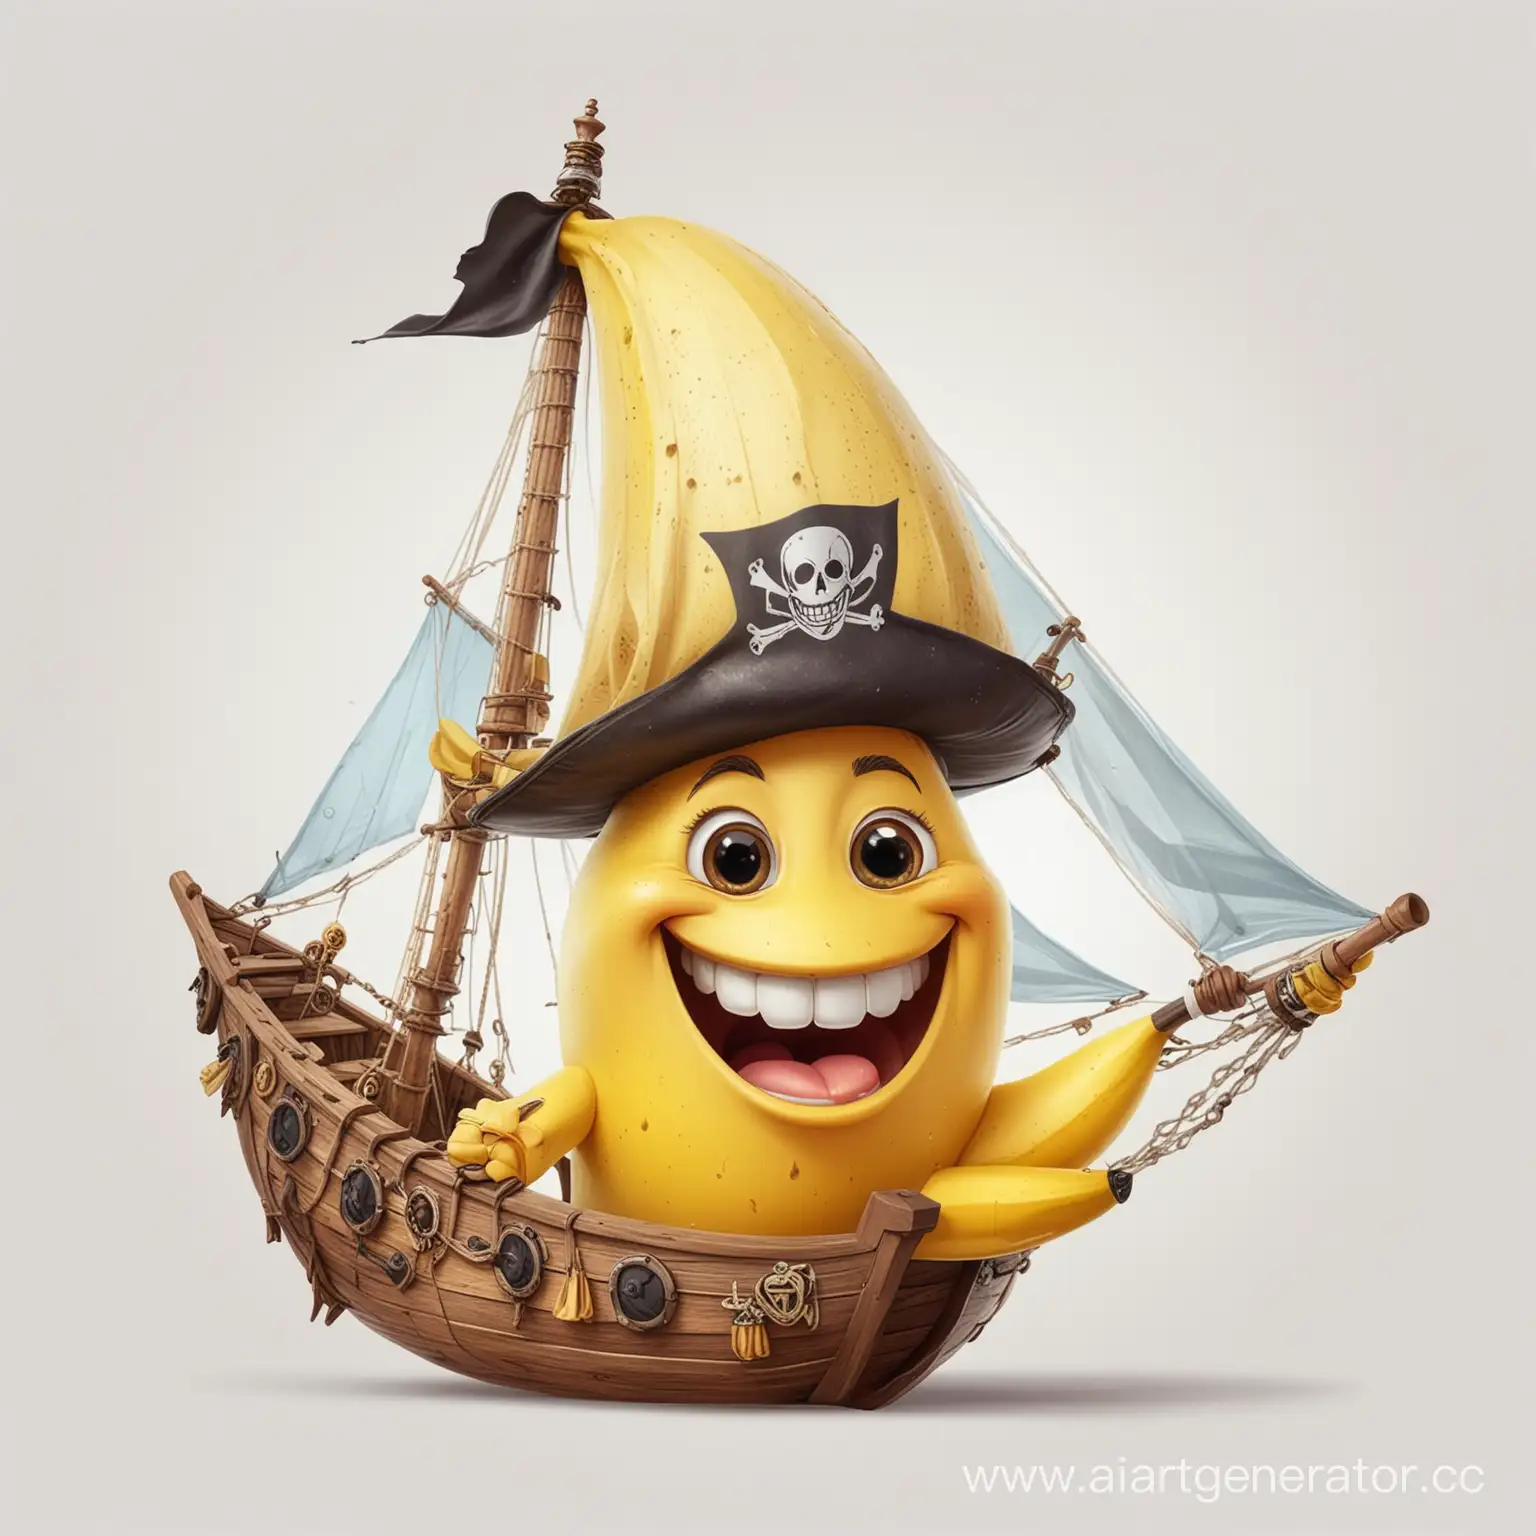 рисунок как в мультике:фрукт банан, улыбается, веселый, с лицом капитана пиратского корабля, в треугольной шляпе на прозрачном фоне